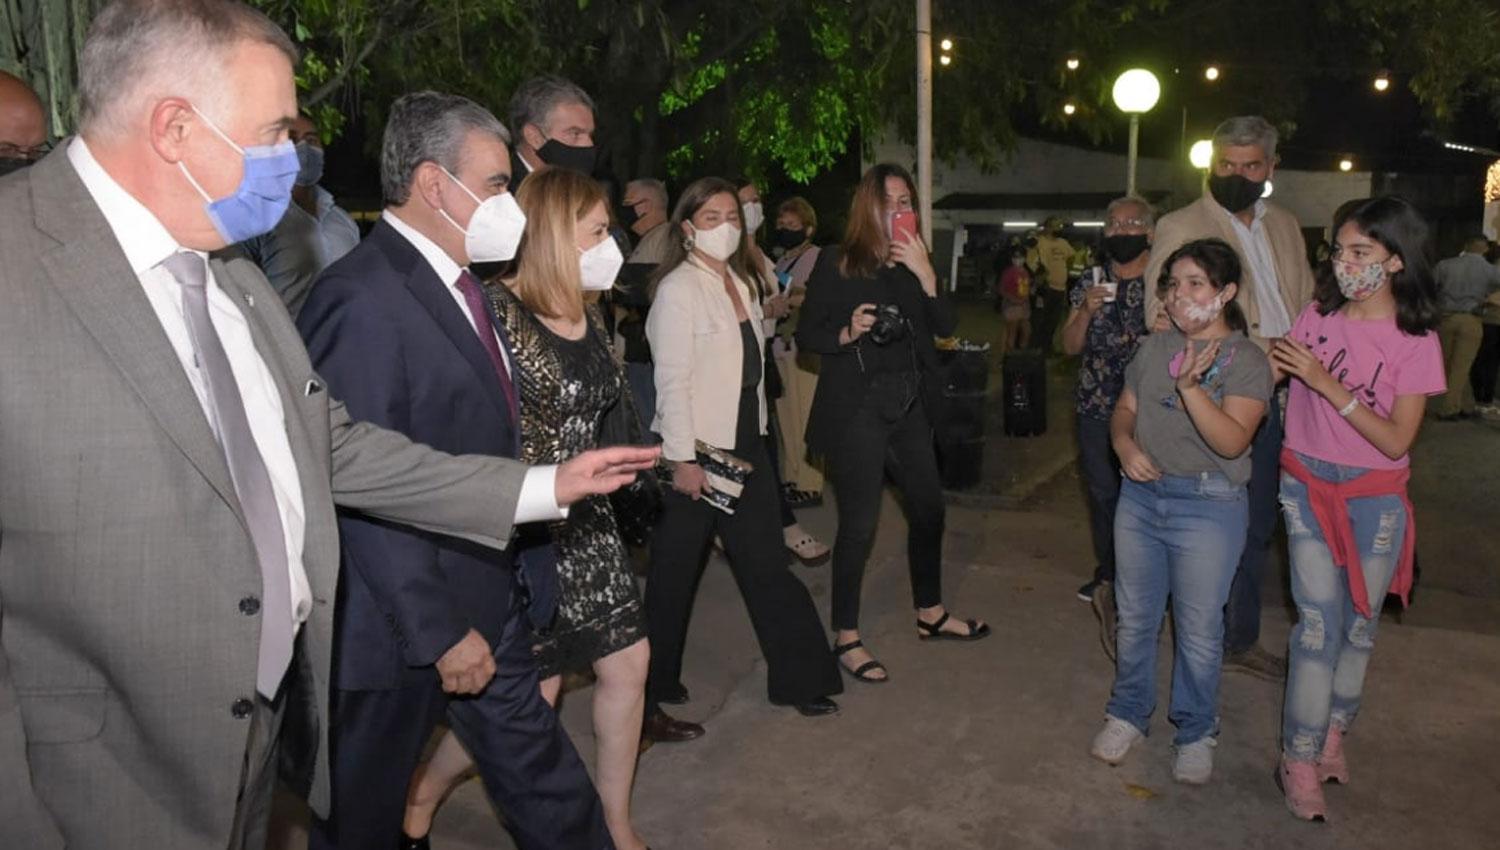 RECORRIDA. El vicegobernador a cargo del Ejecutivo, Osvaldo Jaldo, caminó por la Expo junto al intendente de la capital Germán Alfaro y su esposa, la diputada nacional Beatriz Ávila.